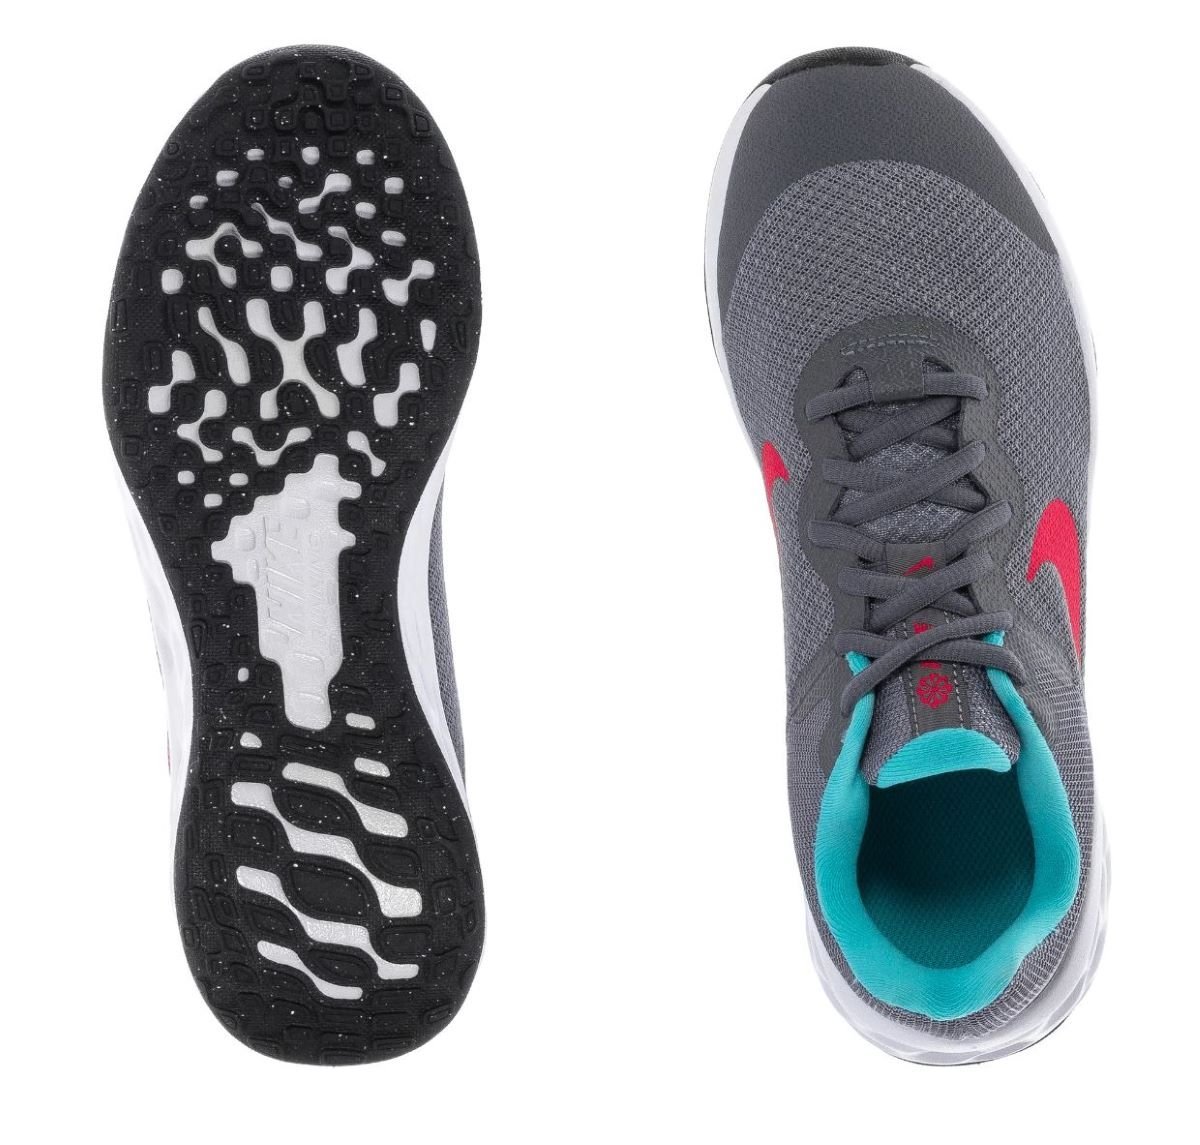 Topánky Nike Revolution 6 GS J - grey